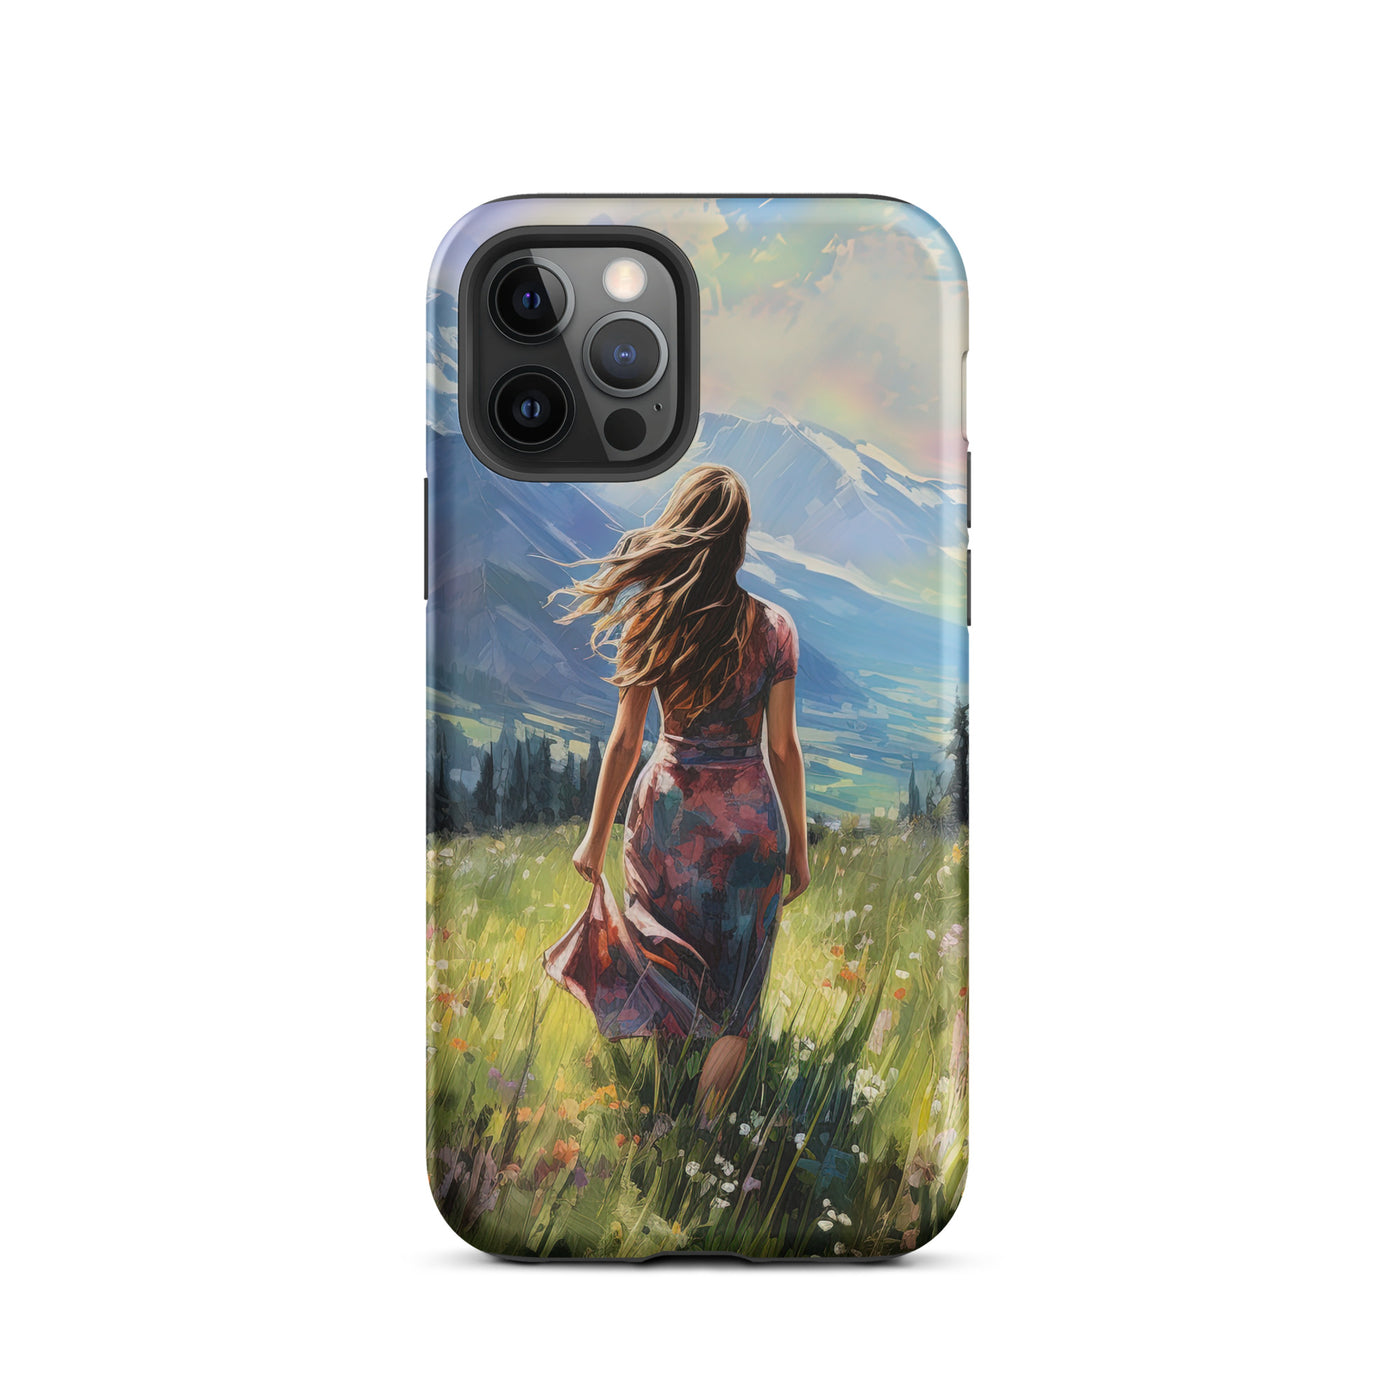 Frau mit langen Kleid im Feld mit Blumen - Berge im Hintergrund - Malerei - iPhone Schutzhülle (robust) berge xxx iPhone 12 Pro